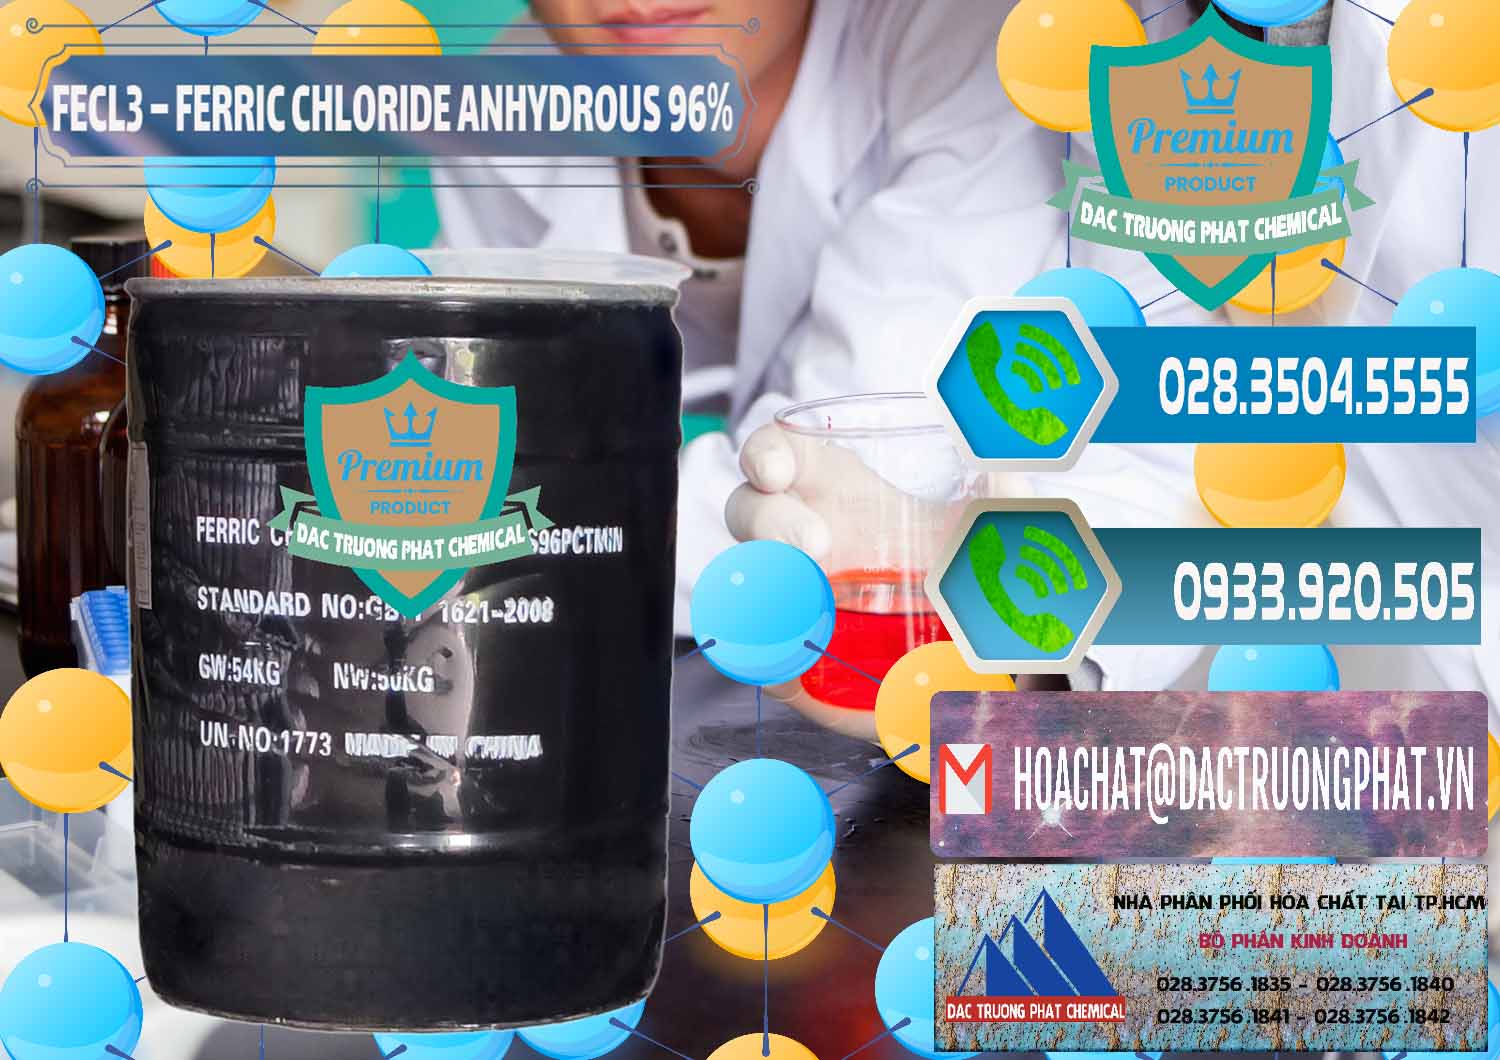 Chuyên bán ( phân phối ) FECL3 – Ferric Chloride Anhydrous 96% Trung Quốc China - 0065 - Đơn vị nhập khẩu ( cung cấp ) hóa chất tại TP.HCM - congtyhoachat.net